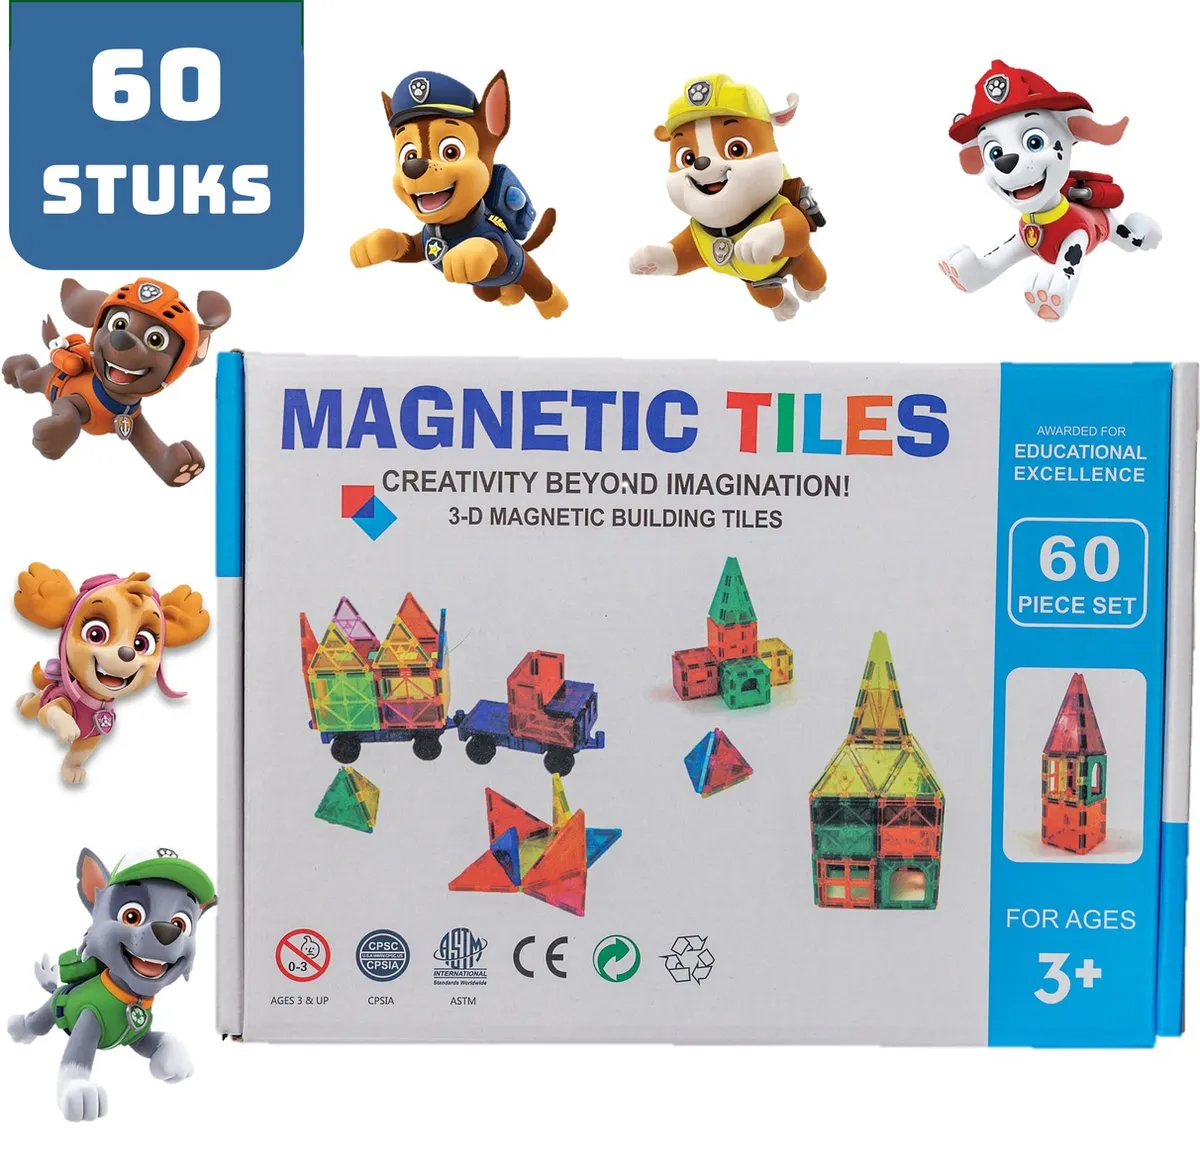 Magnetic Tiles - Magnaminds - Magna tiles - Magnetisch Speelgoed – 60 stuks - Constructie speelgoed - Magnetische tegels - Montessori speelgoed - Magnetic toys - Magnetische bouwstenen - Speelgoed 3-12 jaar - Magnetische Bouwblokken - Paw Patrol speelgoed